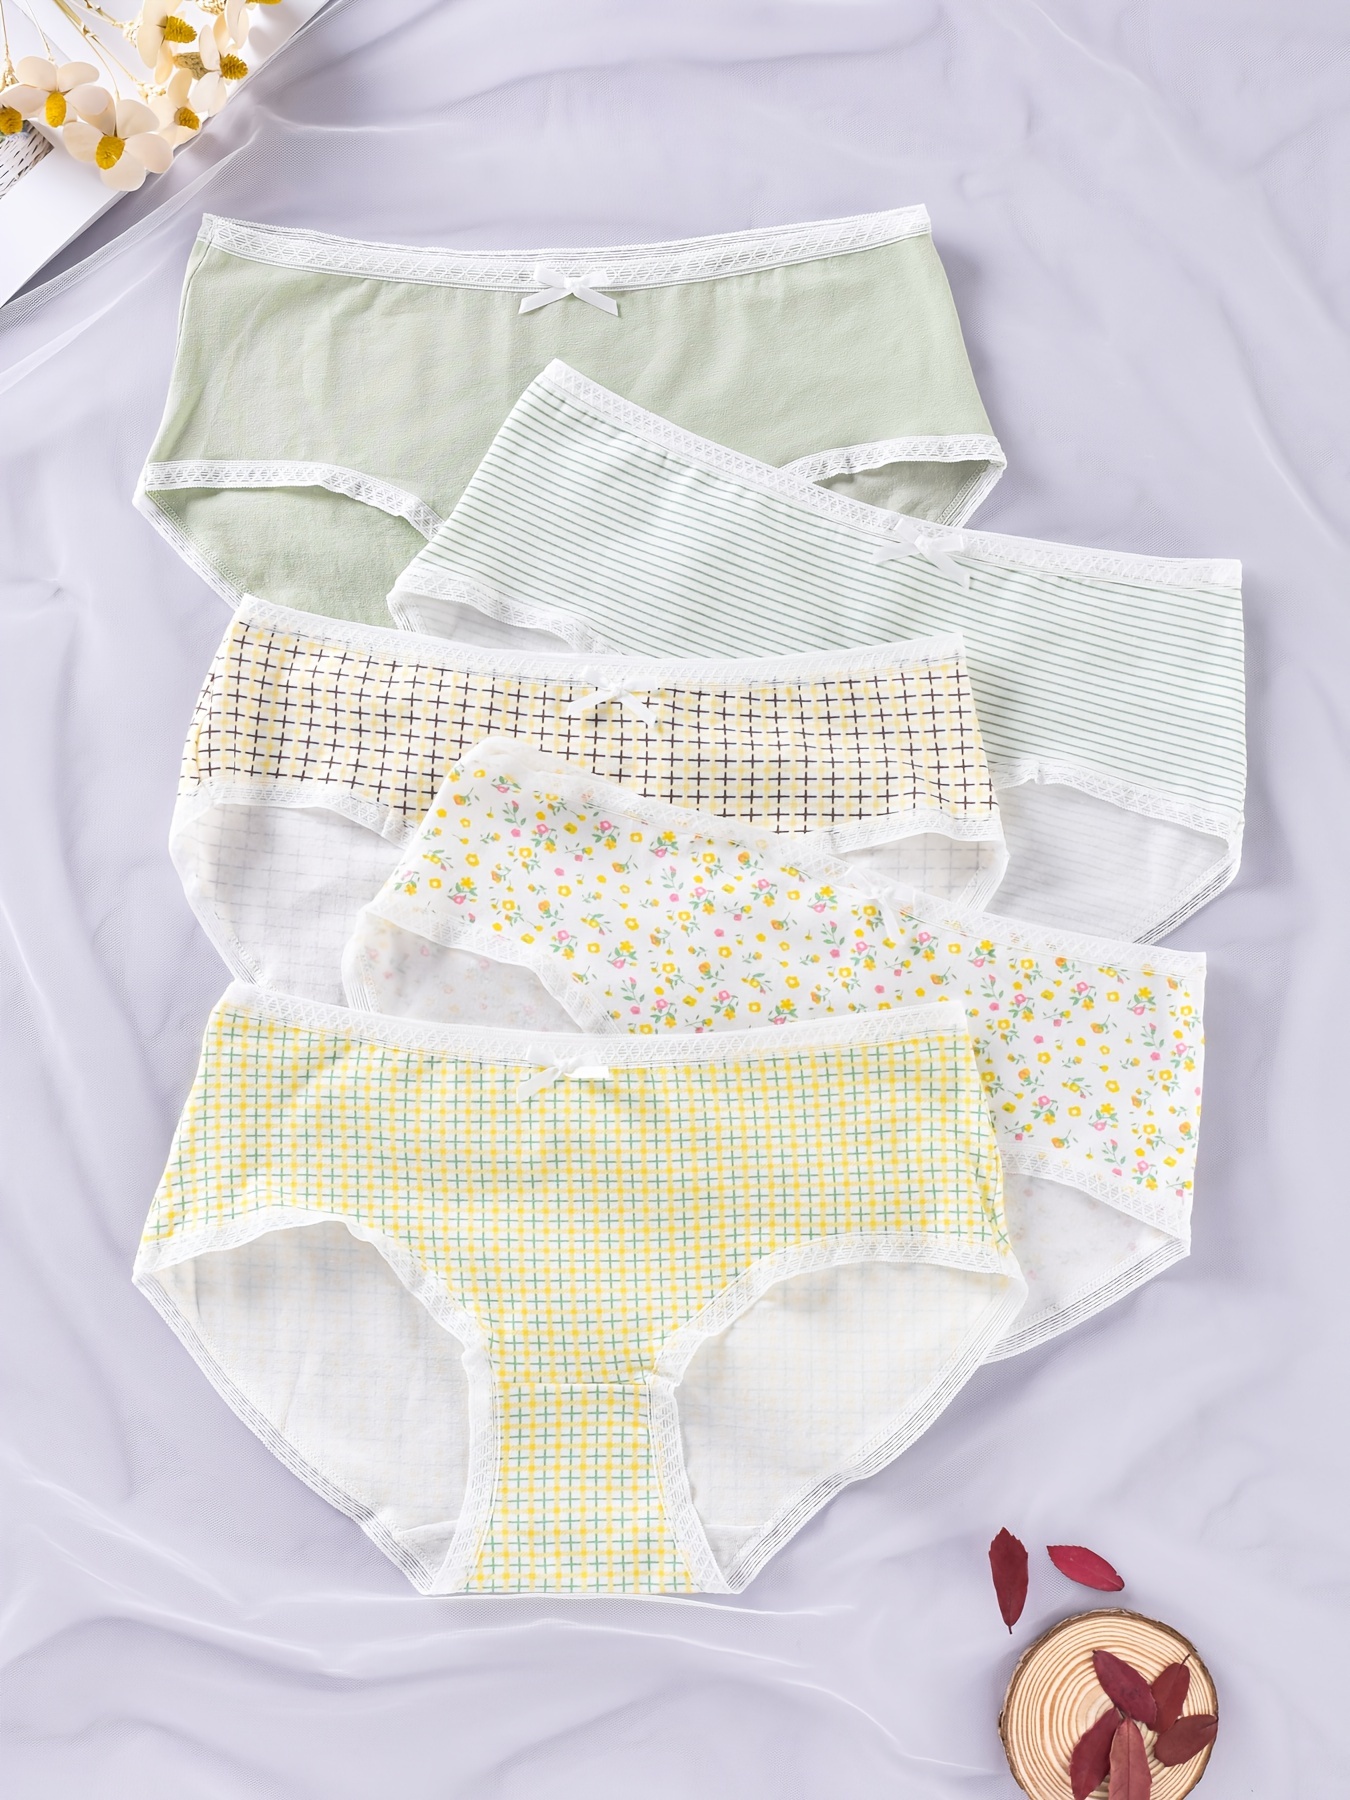 Cheap LANGSHA 4Pcs/Set Cotton Women's Panties Breathable Underwear Cute Bow  Girls Briefs Female Lingerie